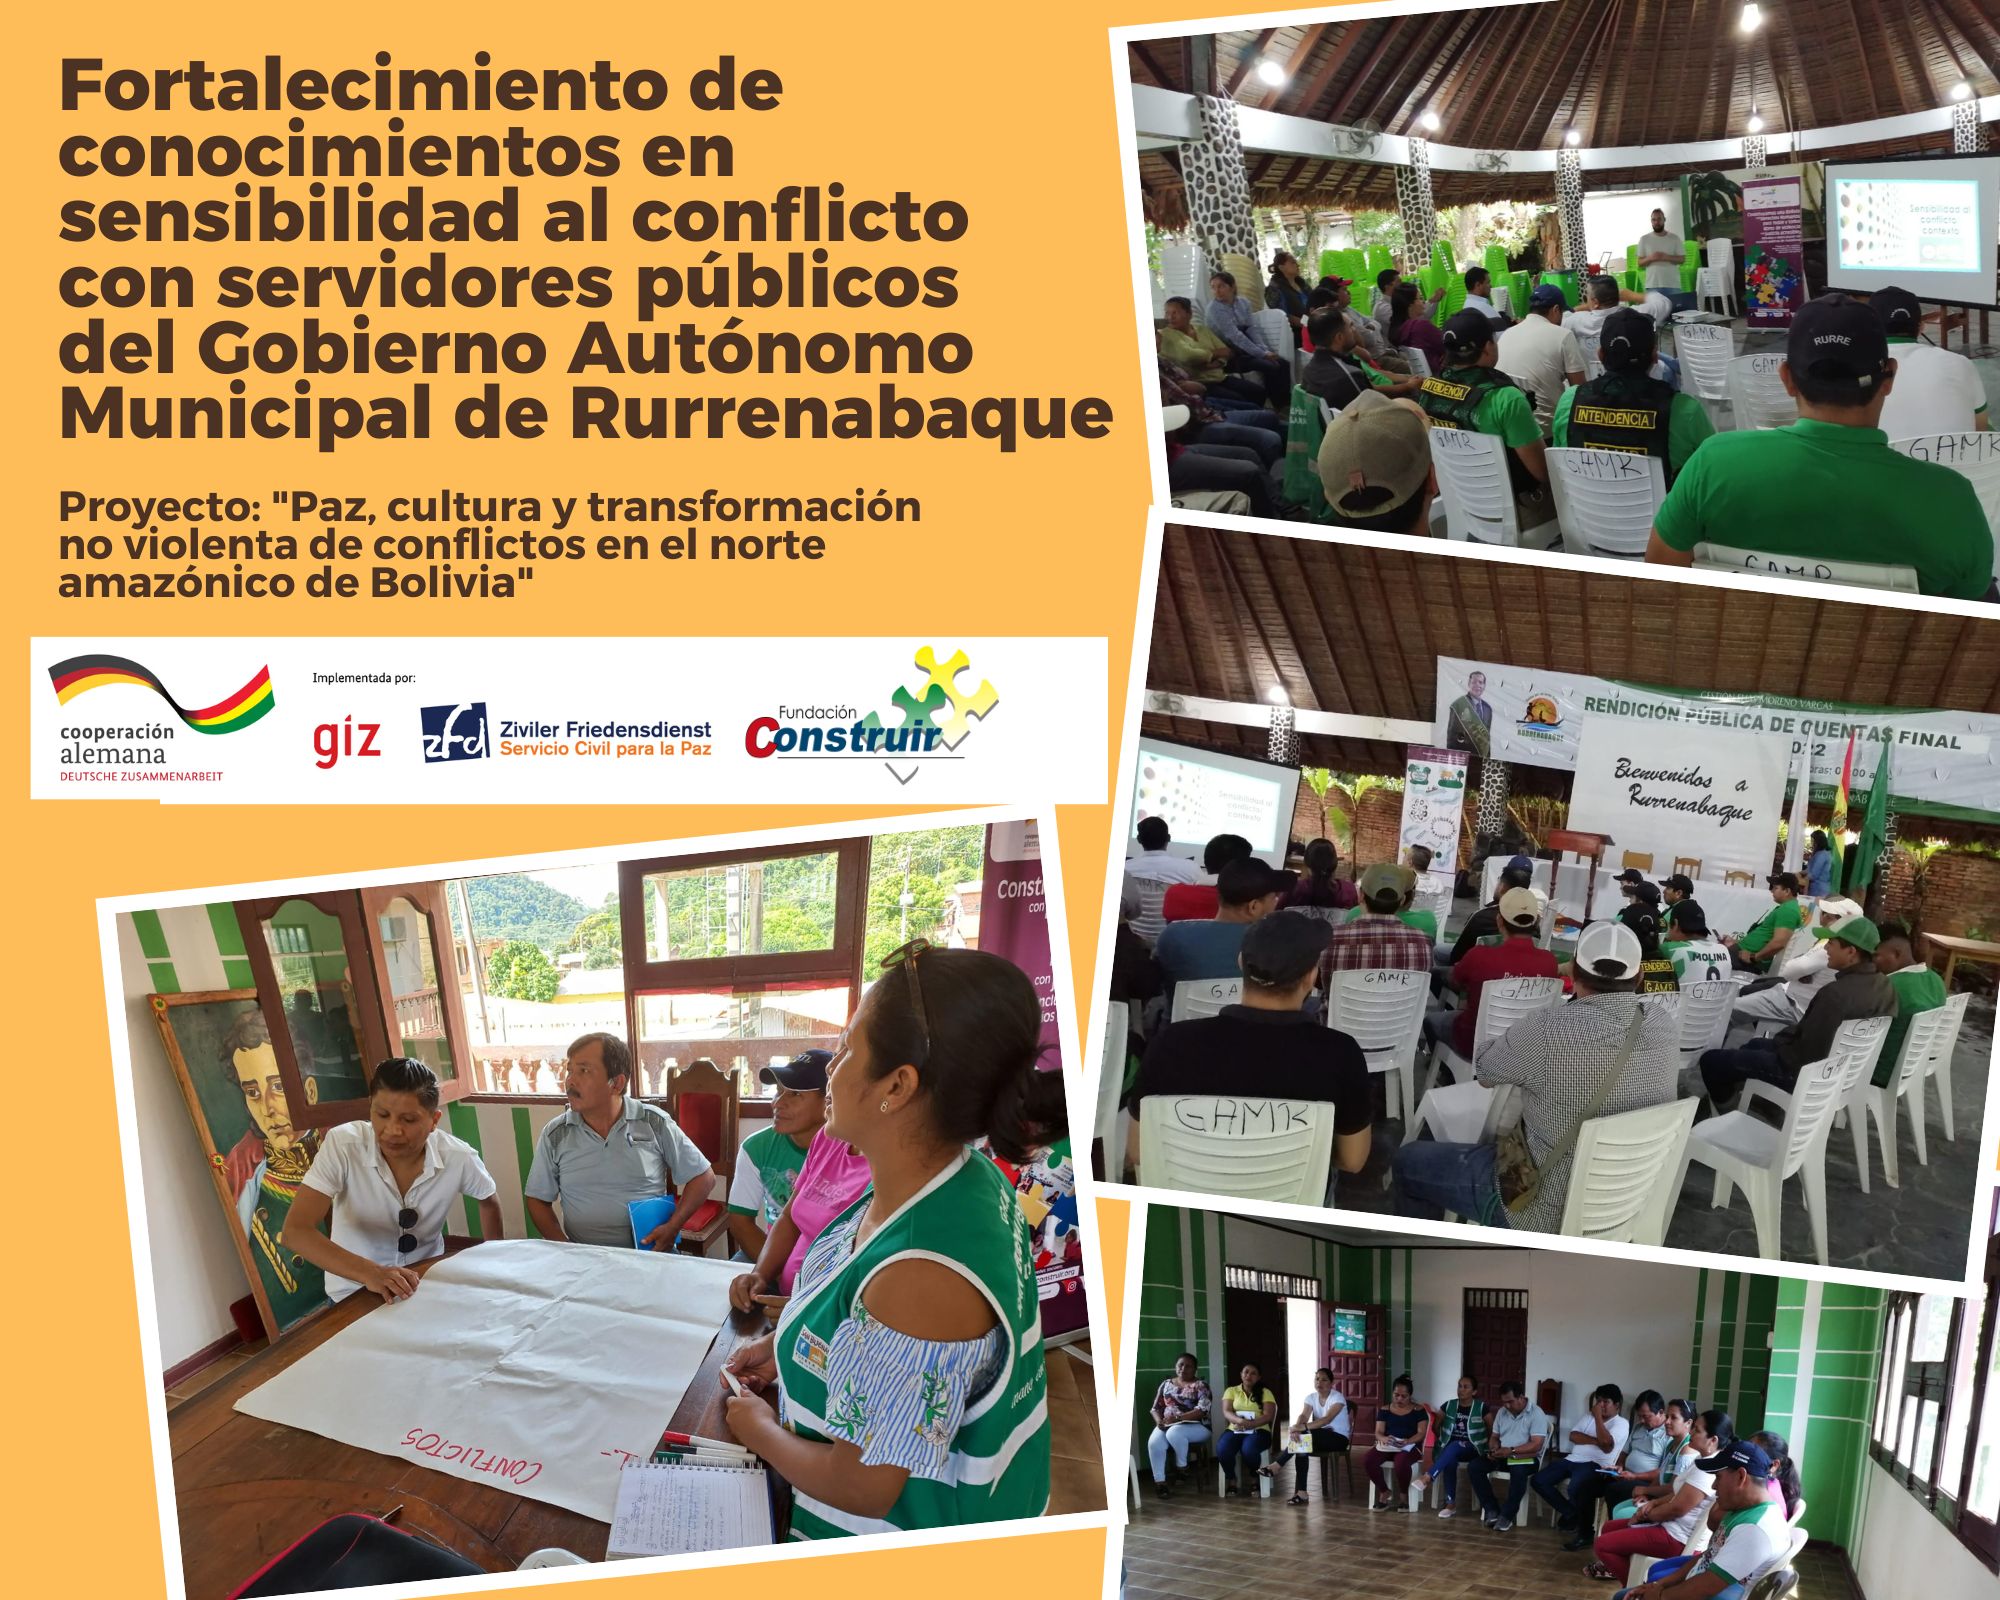 Fortalecimiento de conocimientos en sensibilidad al conflicto con servidores públicos del Gobierno Autónomo Municipal de Rurrenabaque